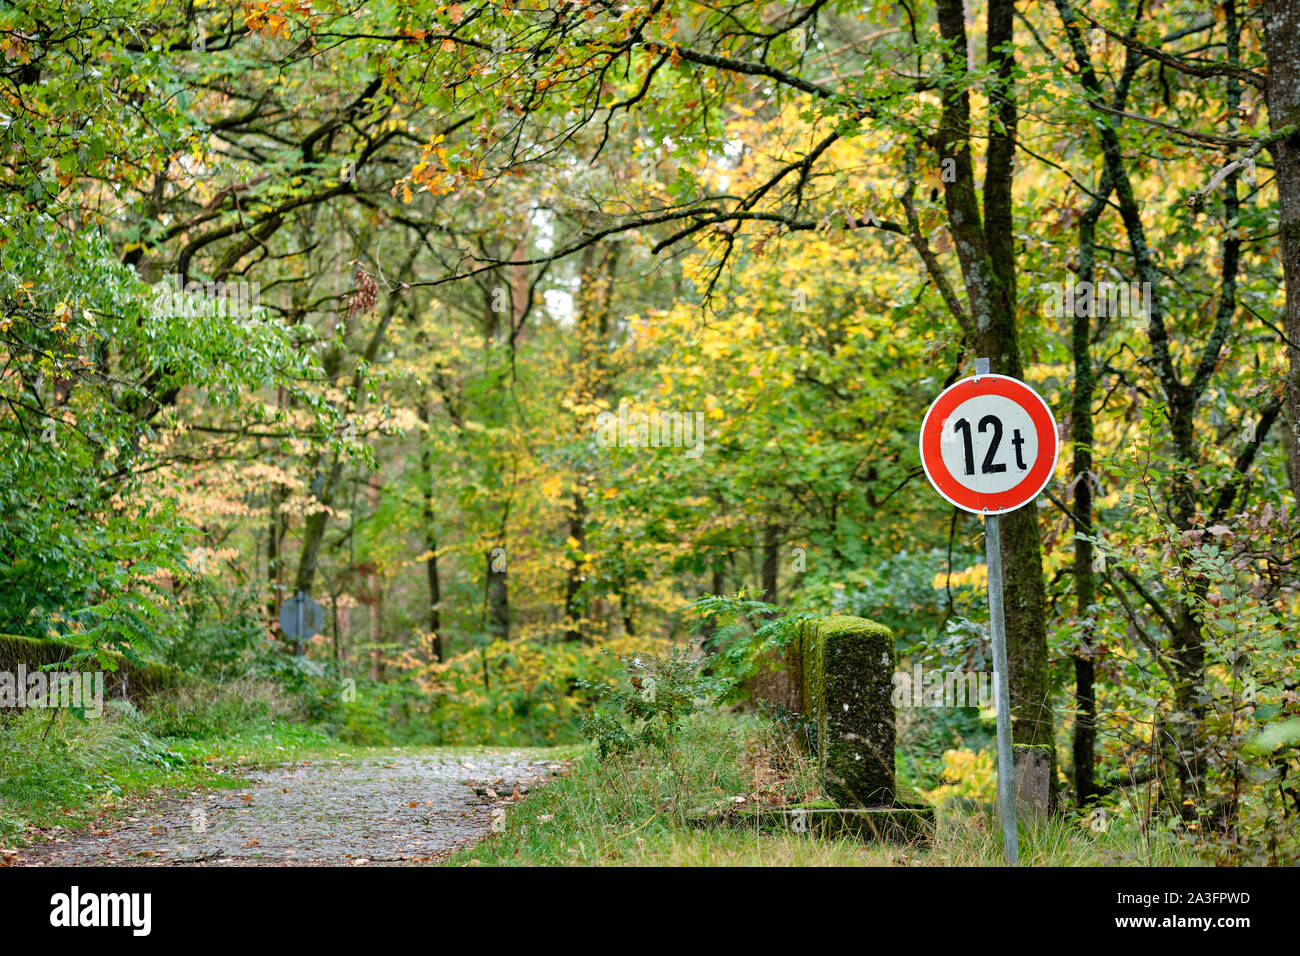 Eine alte bridgewith ein Zeichen informieren über ein Gewicht von 12 t in einem idyllischen Wald in Bayern, Deutschland im Oktober Stockfoto